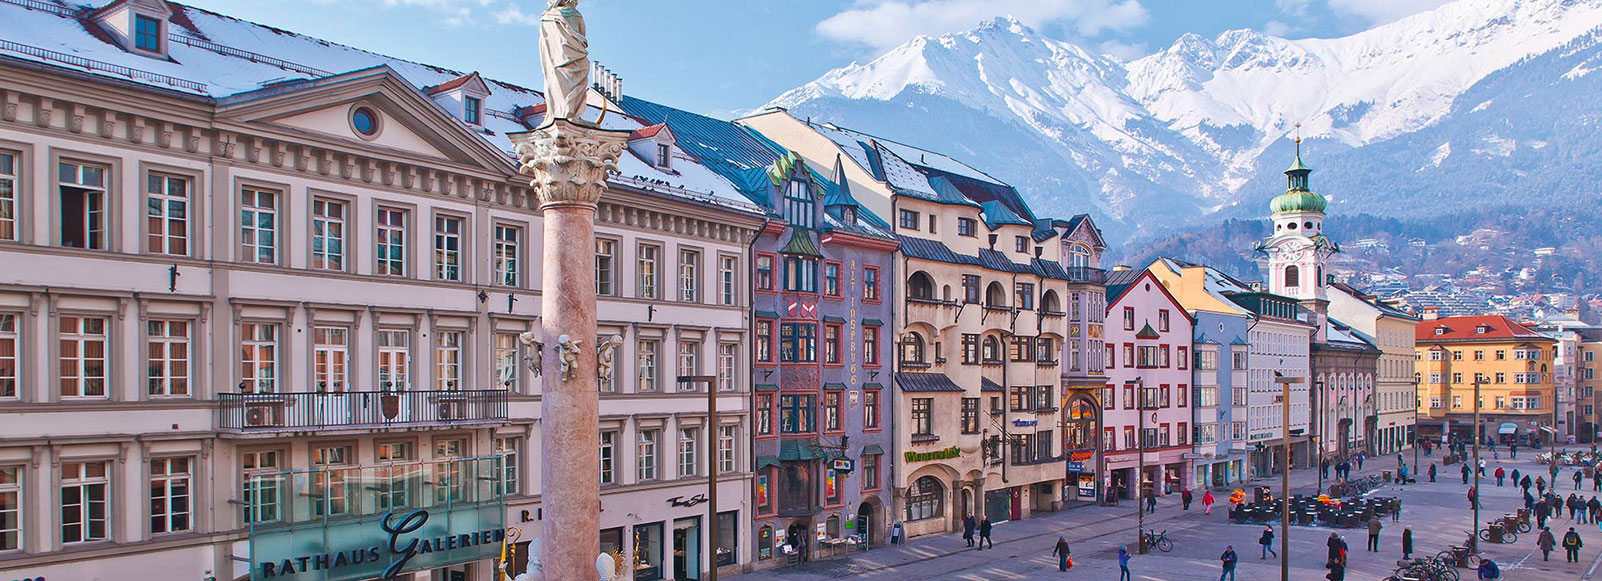 Ofertas de Traslados en Innsbruck. Traslados económicos en Innsbruck 